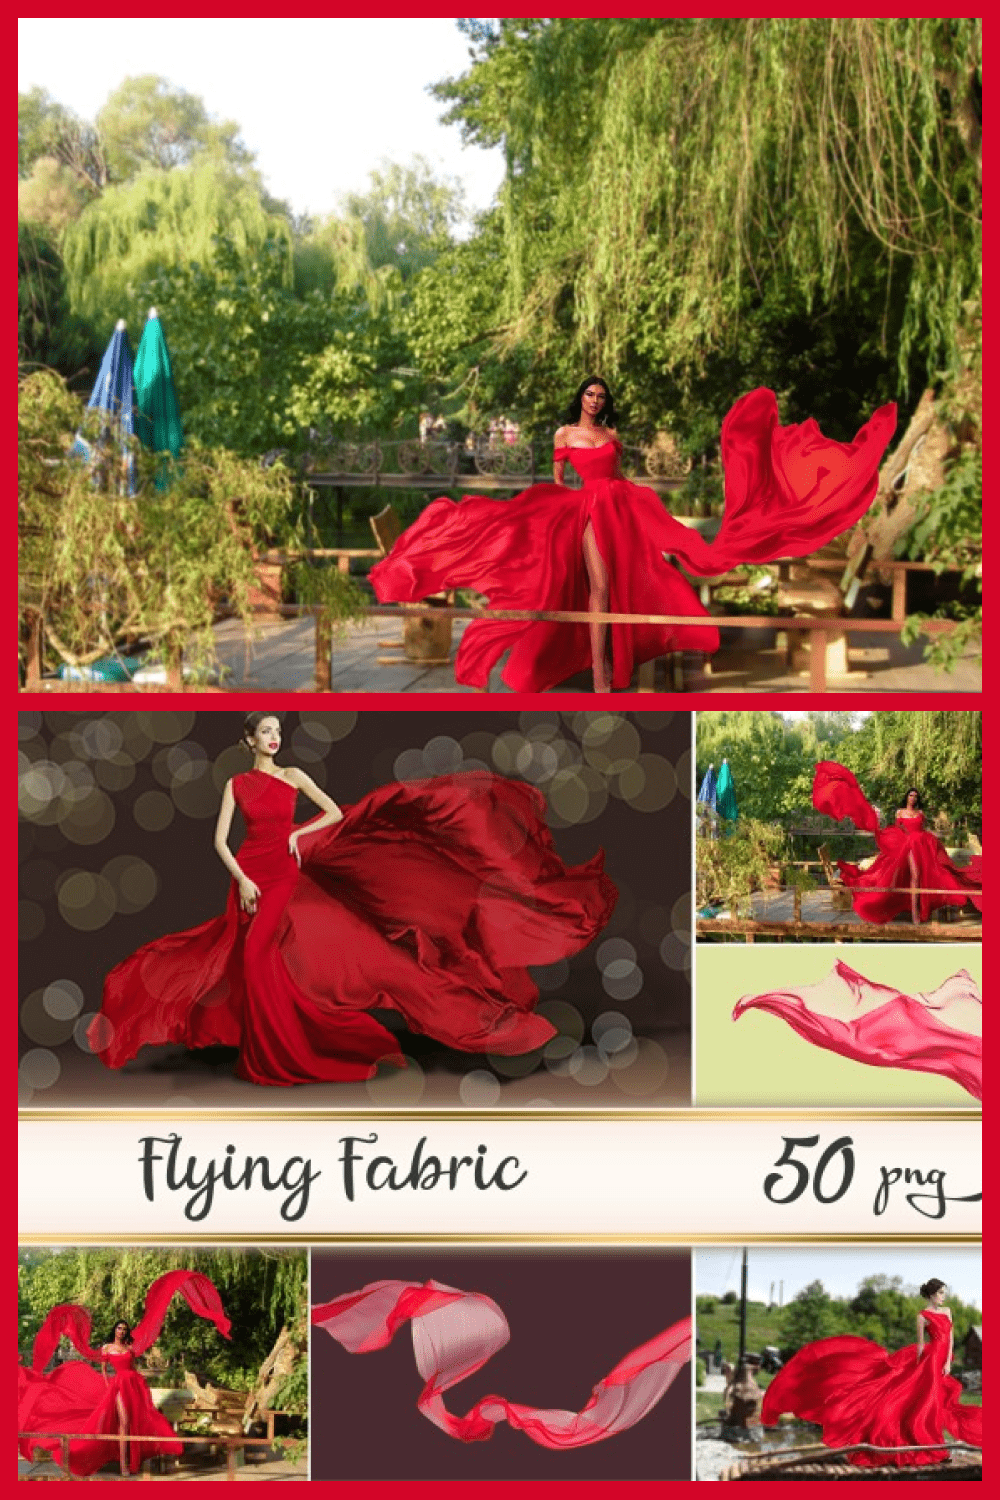 Red Flying Fabrics Overlays - MasterBundles - Pinterest Collage Image.